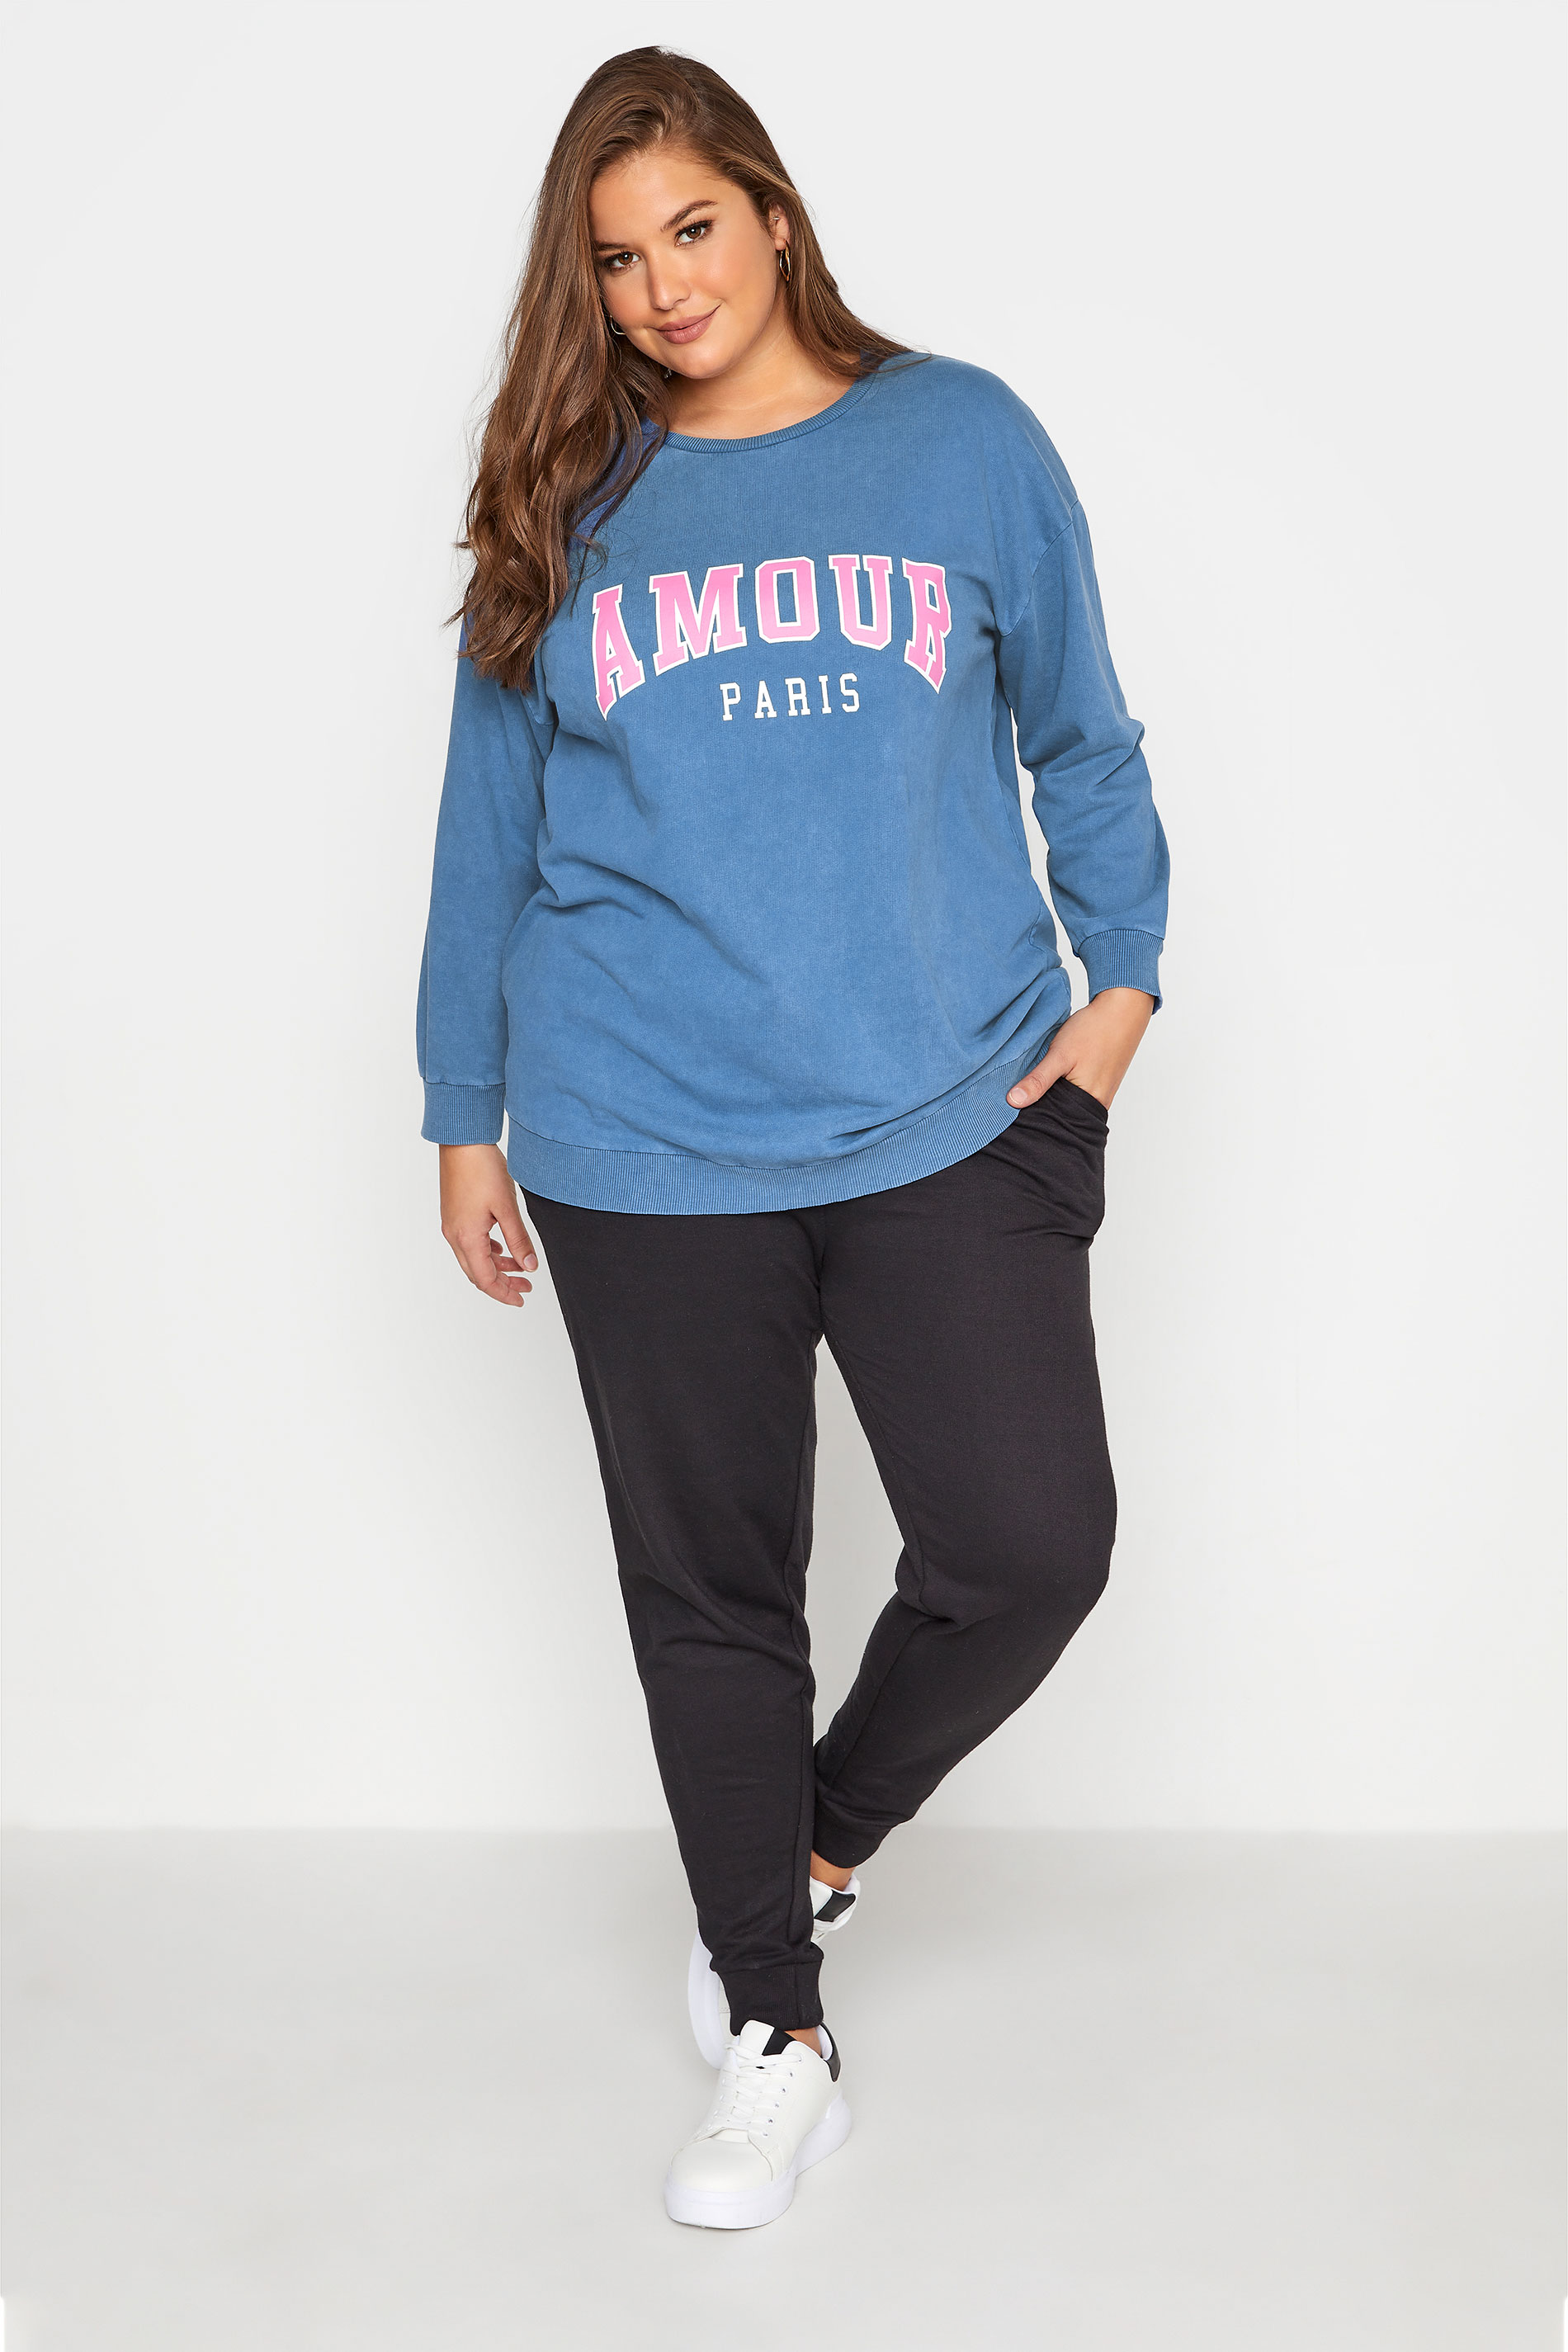 Grande taille  Pulls à Capuche, Sweatshirts & Polaires Grande taille  Sweatshirts | Sweatshirt Bleu Délavé Slogan 'Amour Paris' - WO96922